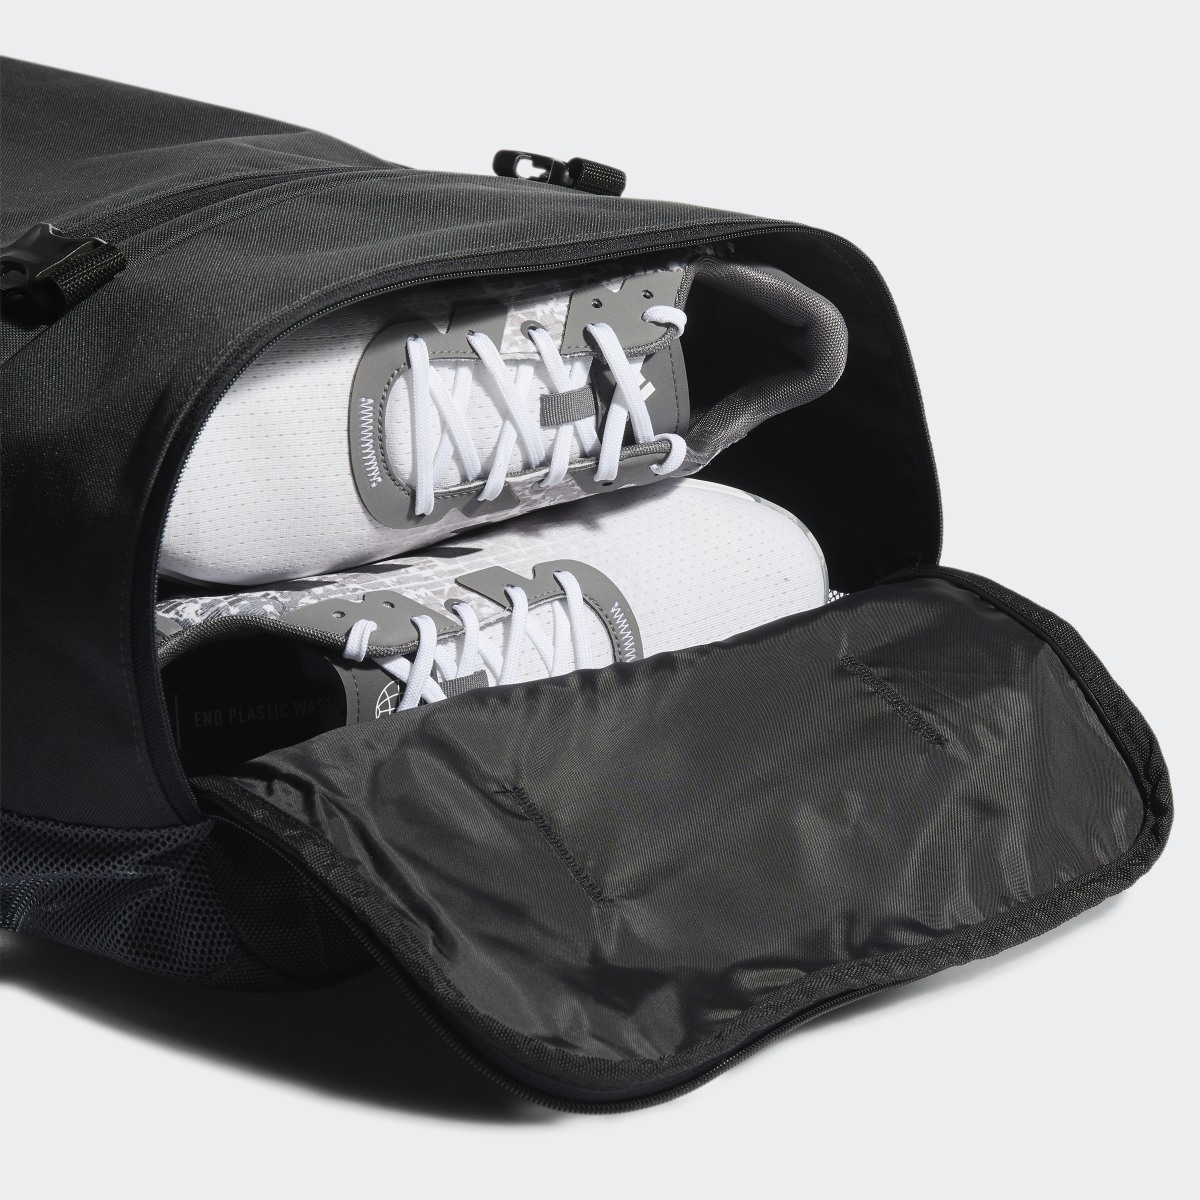 Adidas Golf Duffle Bag. 7